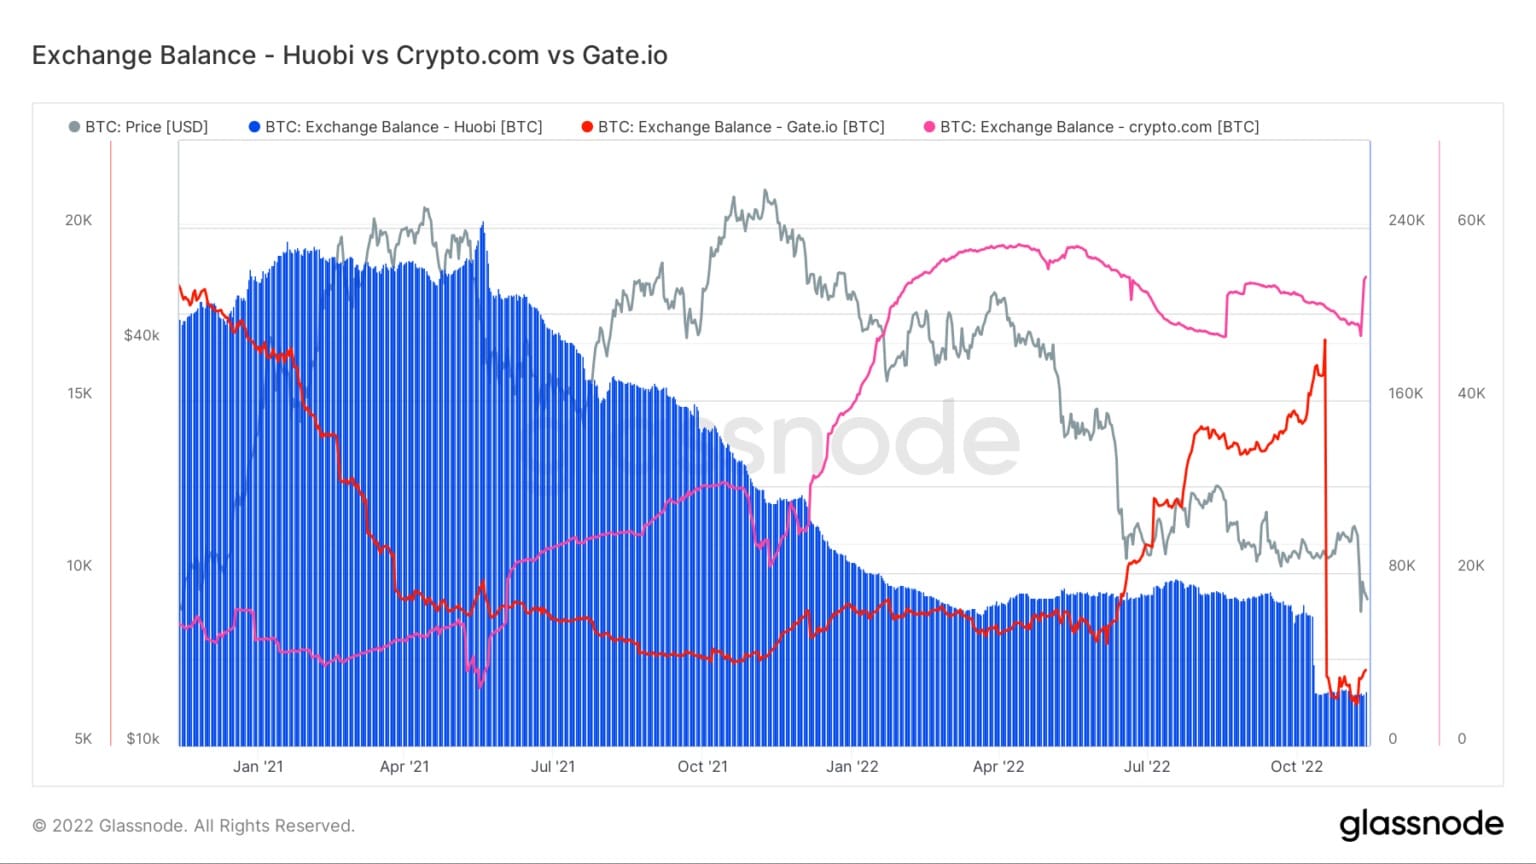 Graphique montrant les soldes de Bitcoin sur Huobi, Crypto.com, et Gate.io de janvier 2021 à novembre 2022 (Source : Glassnode)